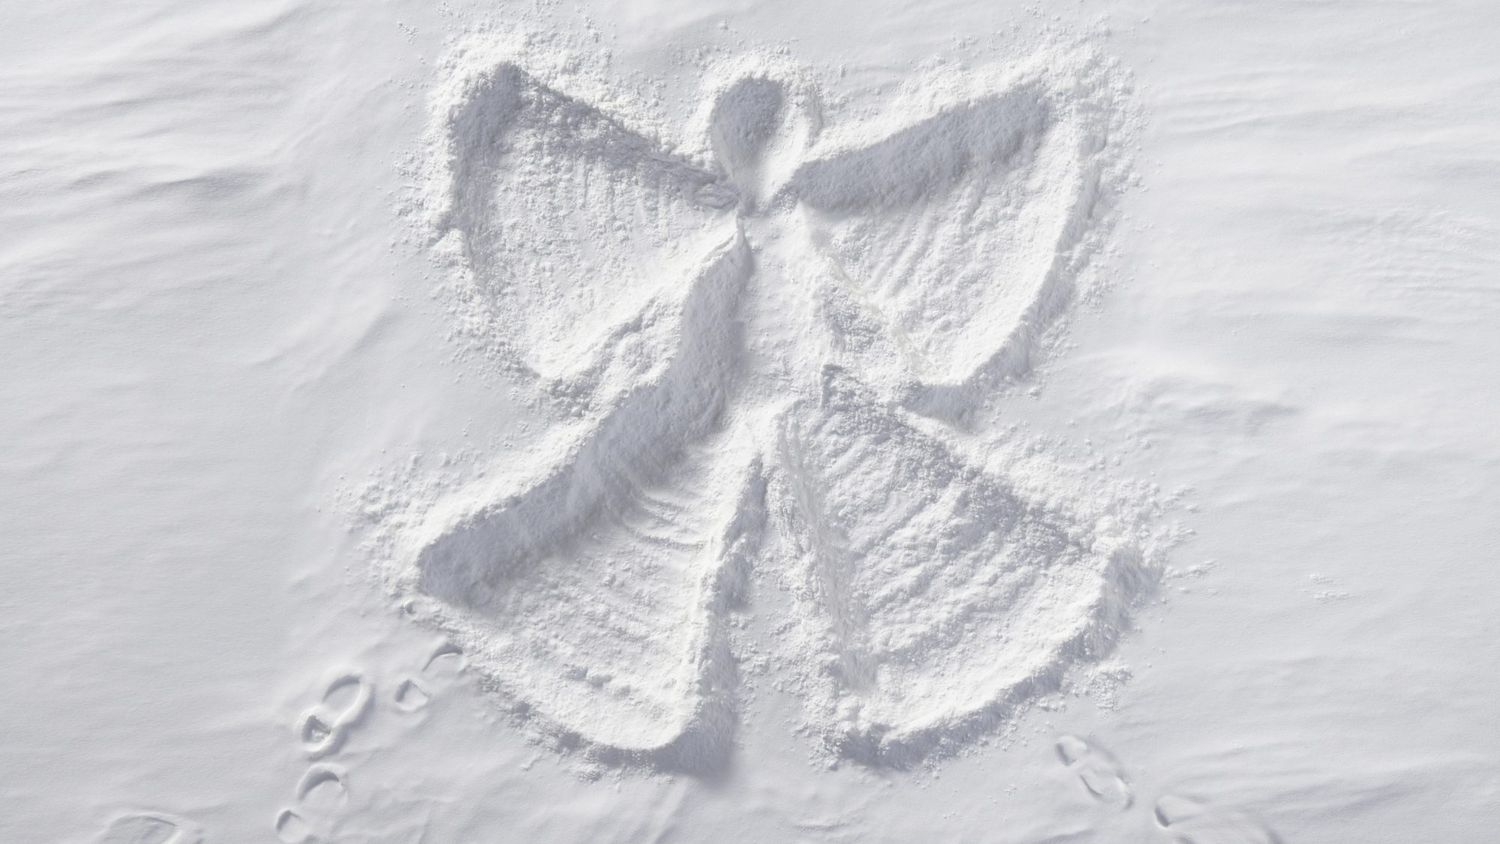 snow angel: winter activities